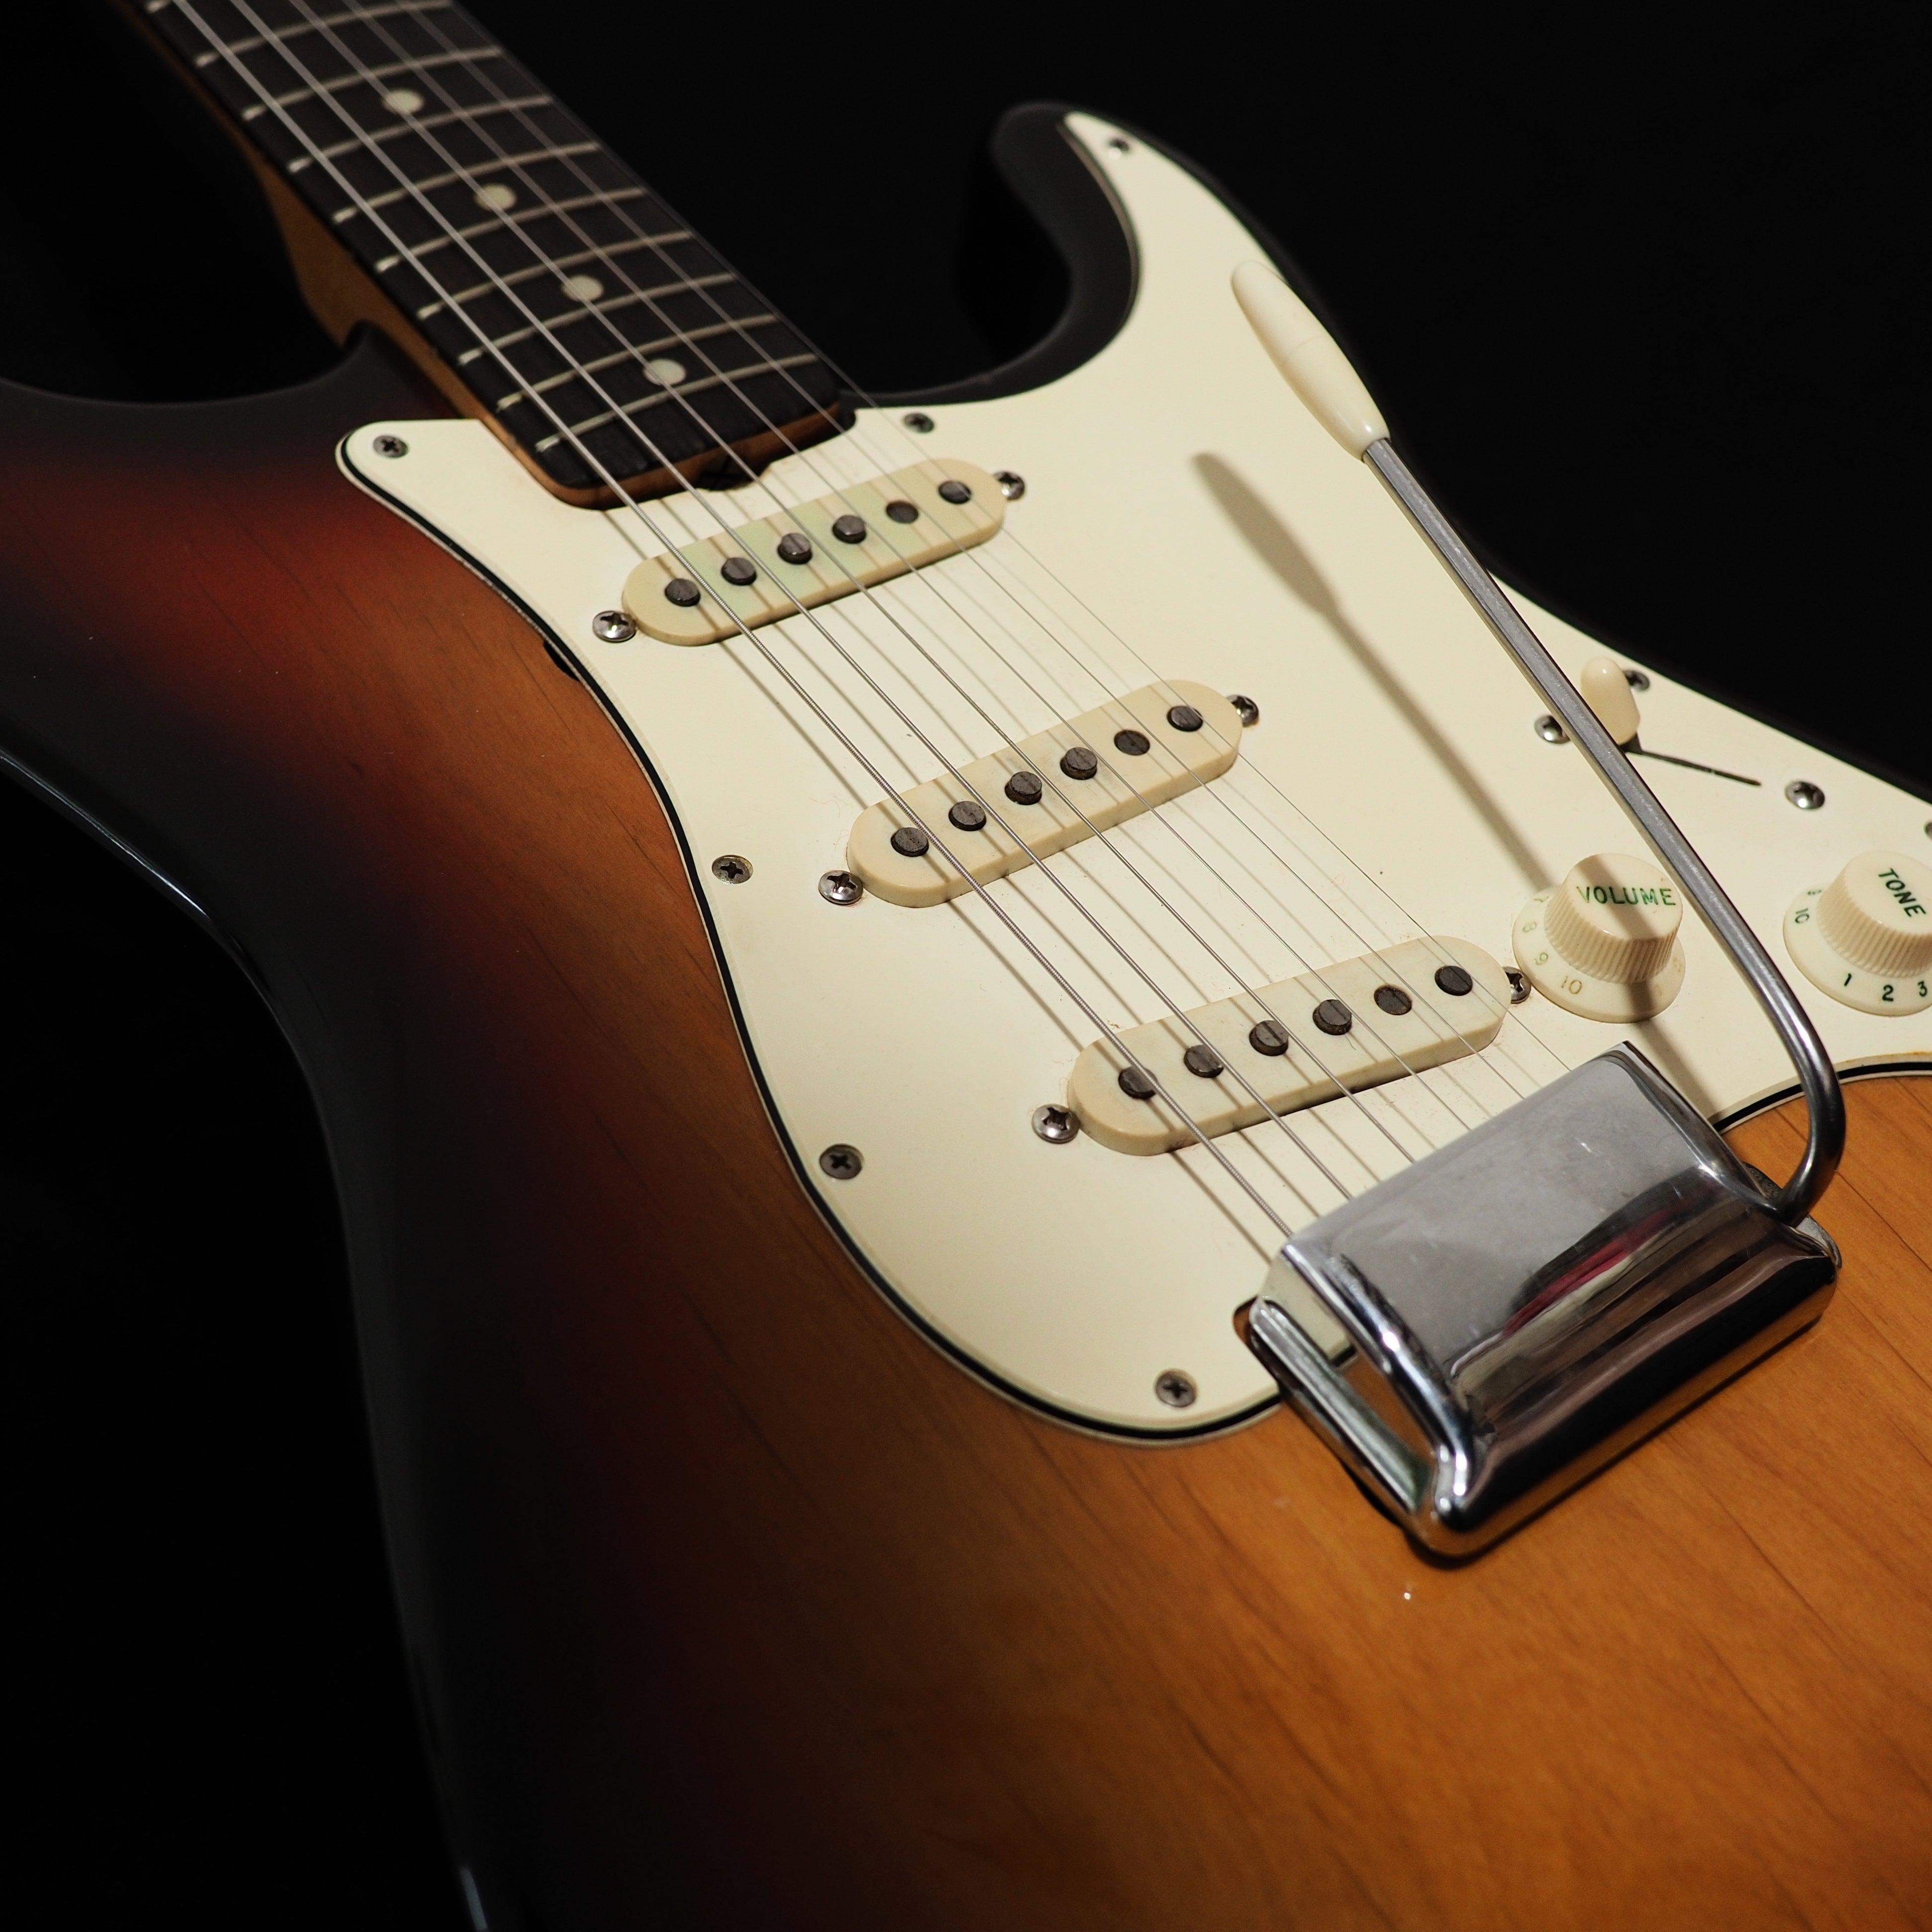 Fender Stratocaster from 1969 - wurst.guitars